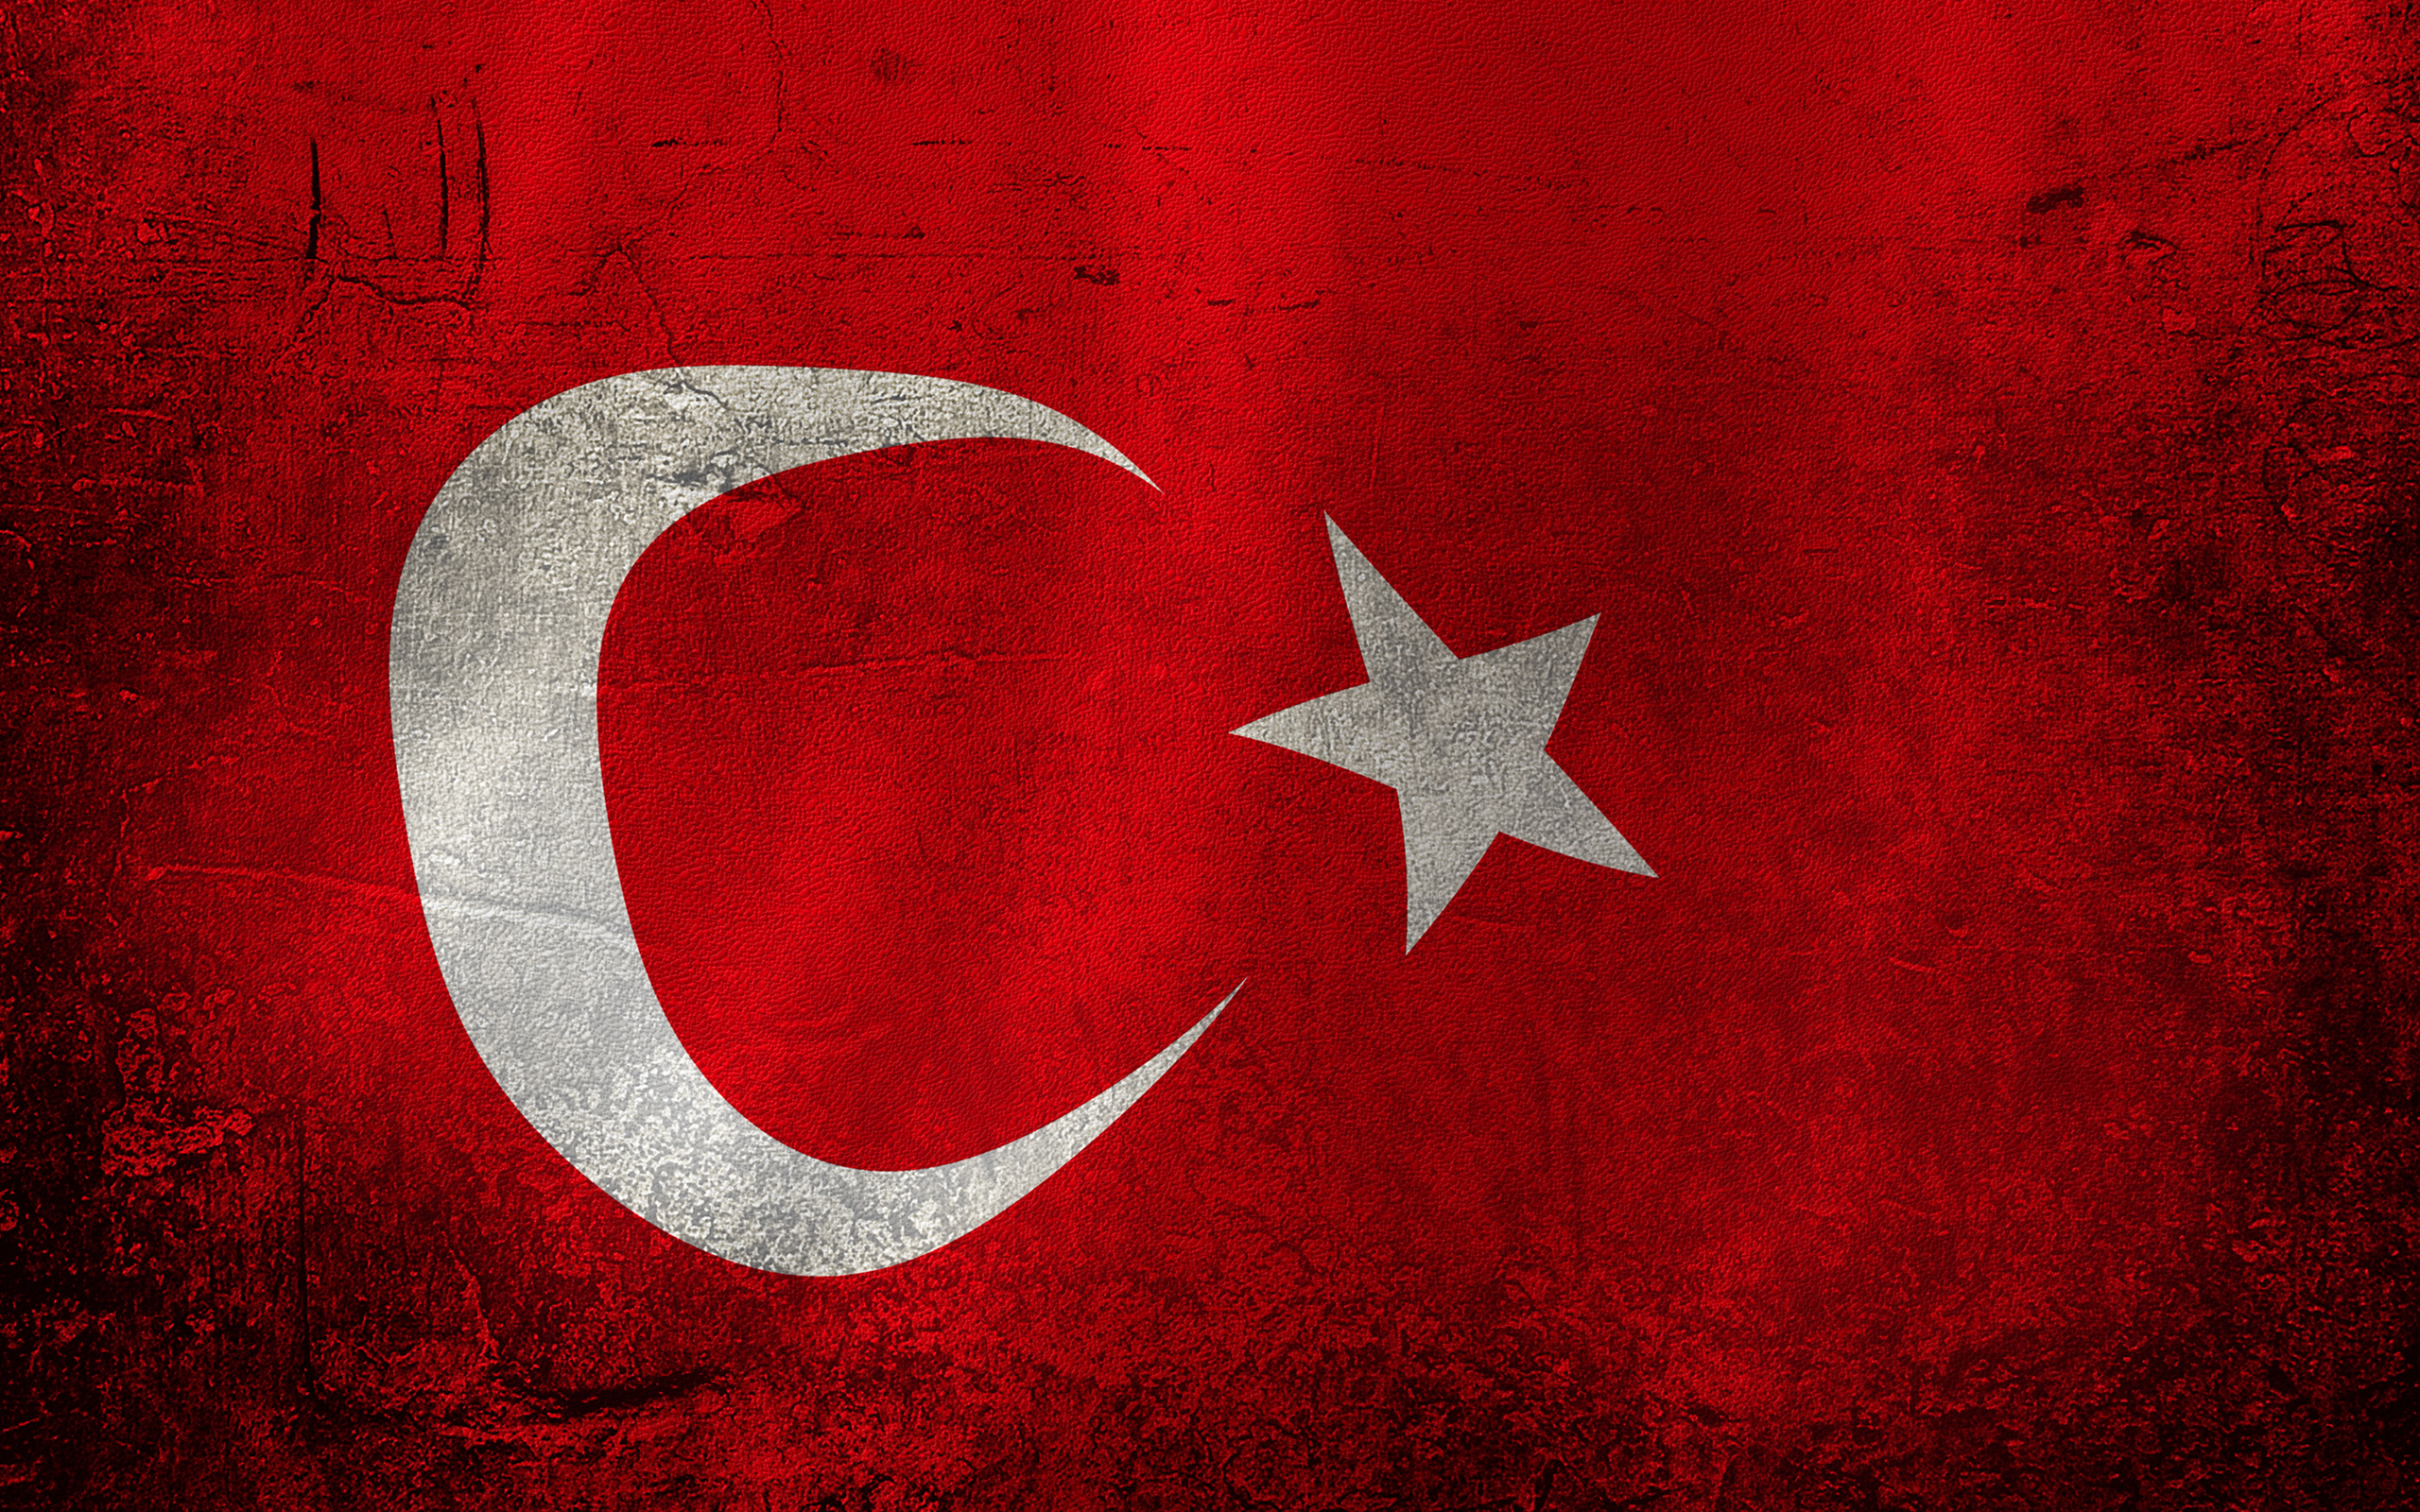 عکسهای پرچم کشور ترکیه